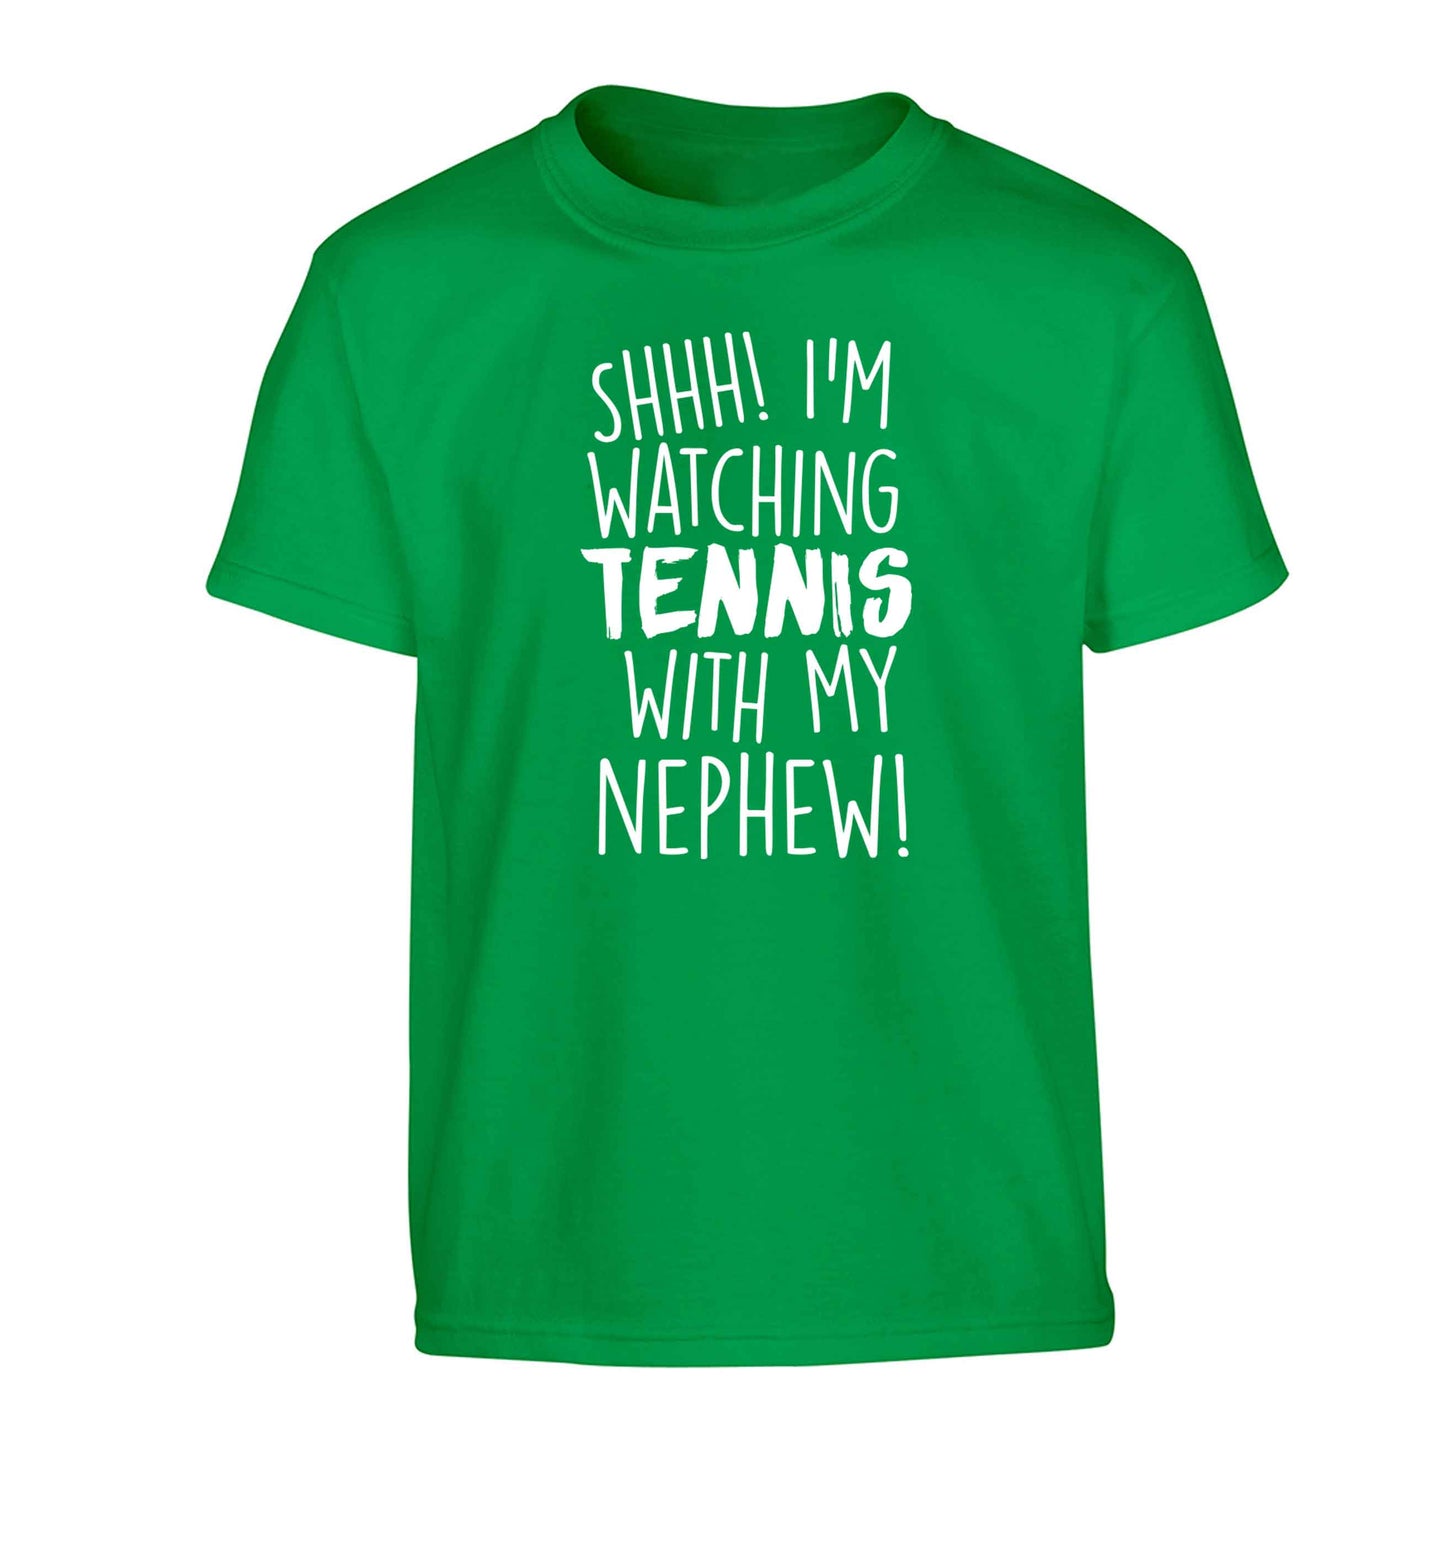 Shh! I'm watching tennis with my nephew! Children's green Tshirt 12-13 Years